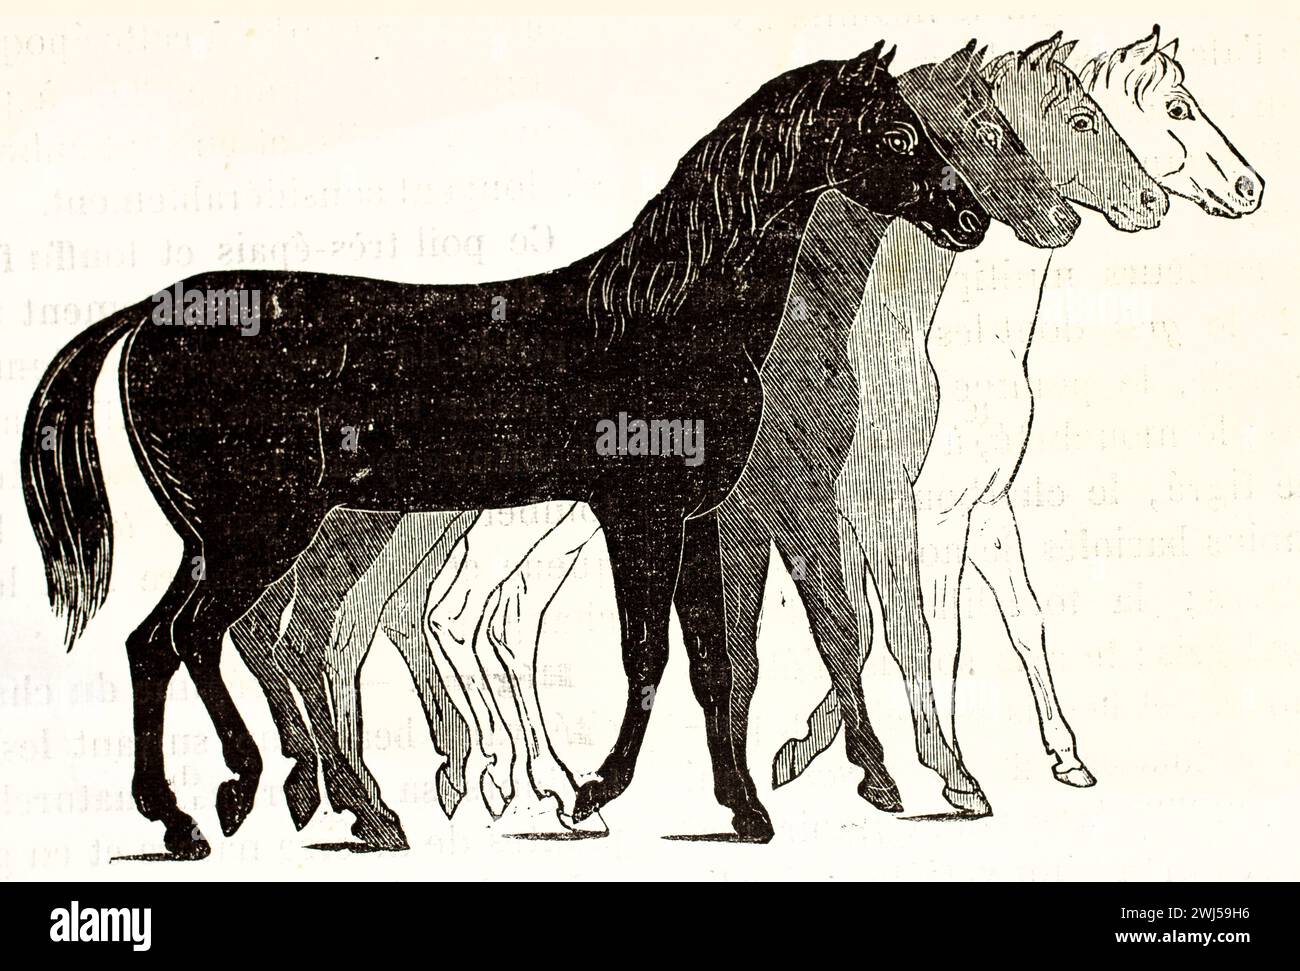 Quatre chevaux disposés du noir au blanc, corps entier, sur fond blanc. Auteur inconnu, Brehm's les Mammifers, Baillière et fils, Paris, 1878 Banque D'Images